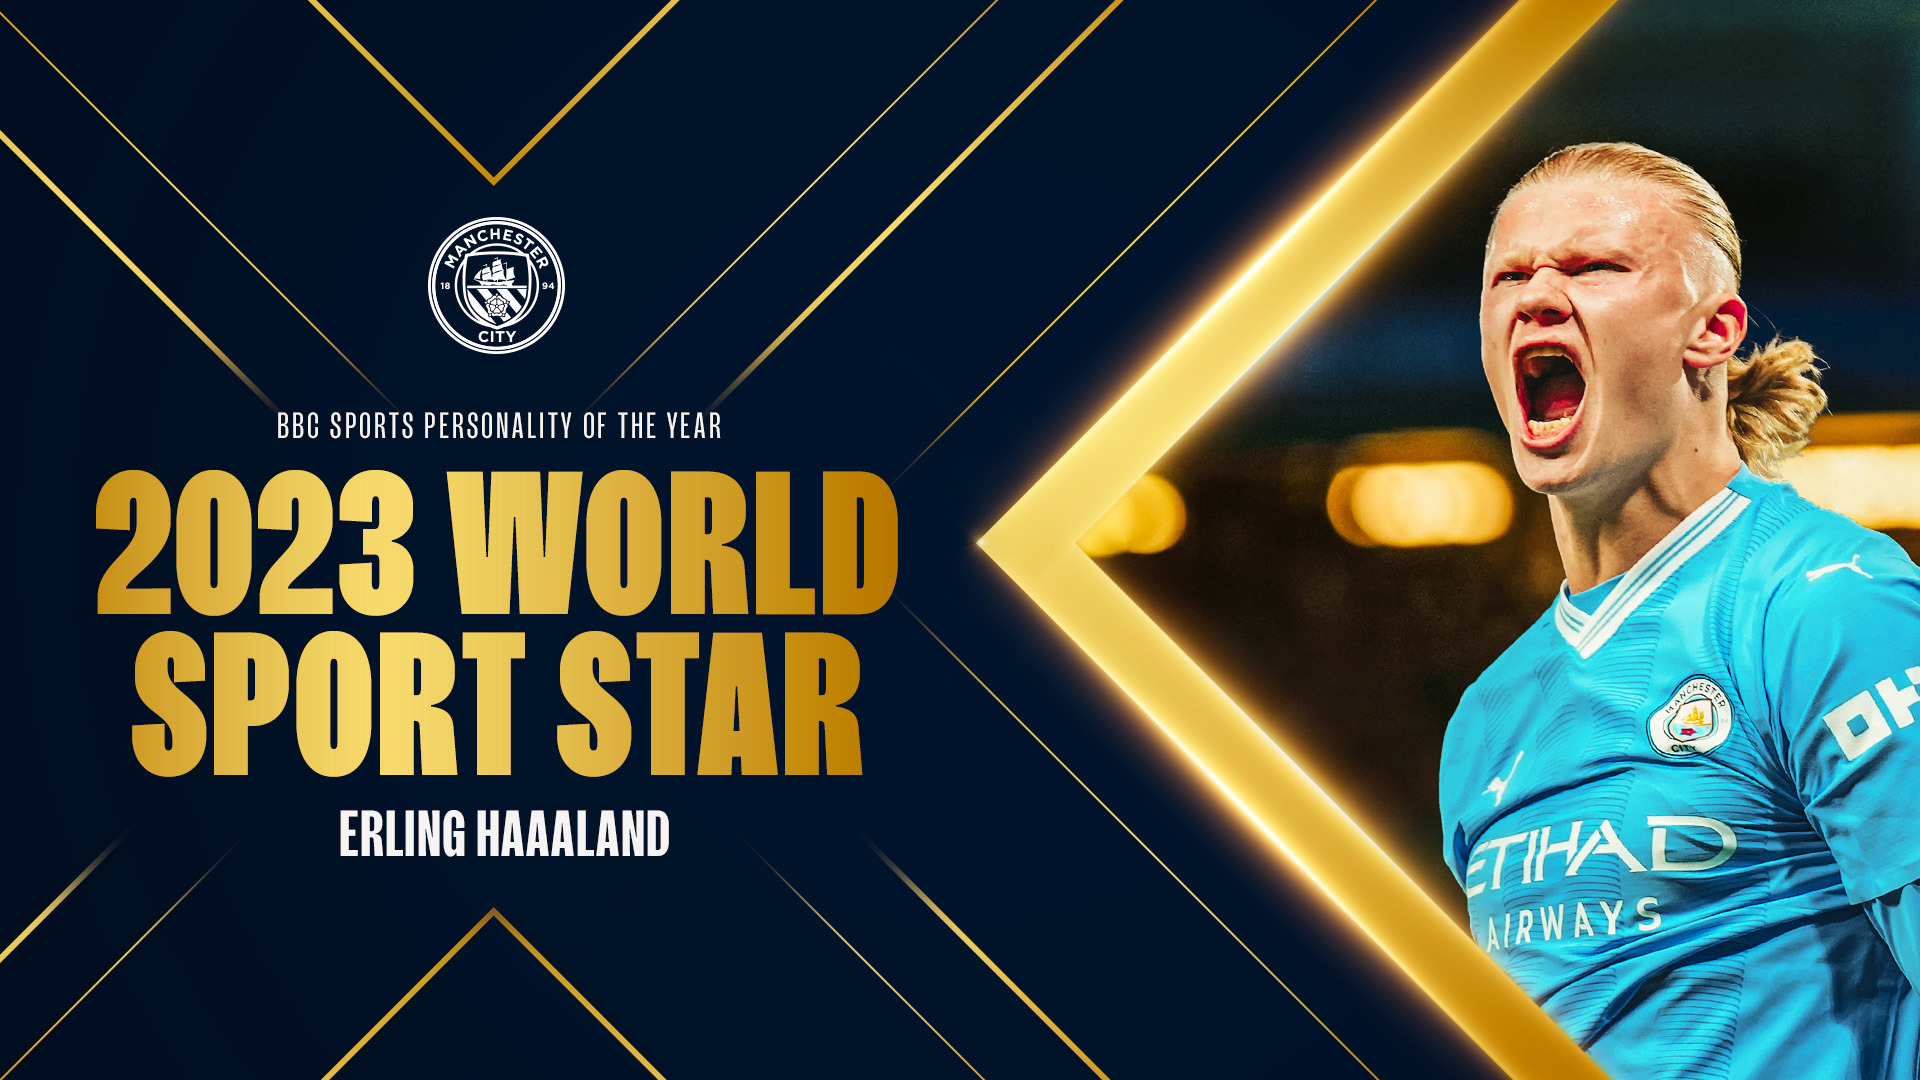 Haaland wins 2023 BBC World Sport Star of the Year award